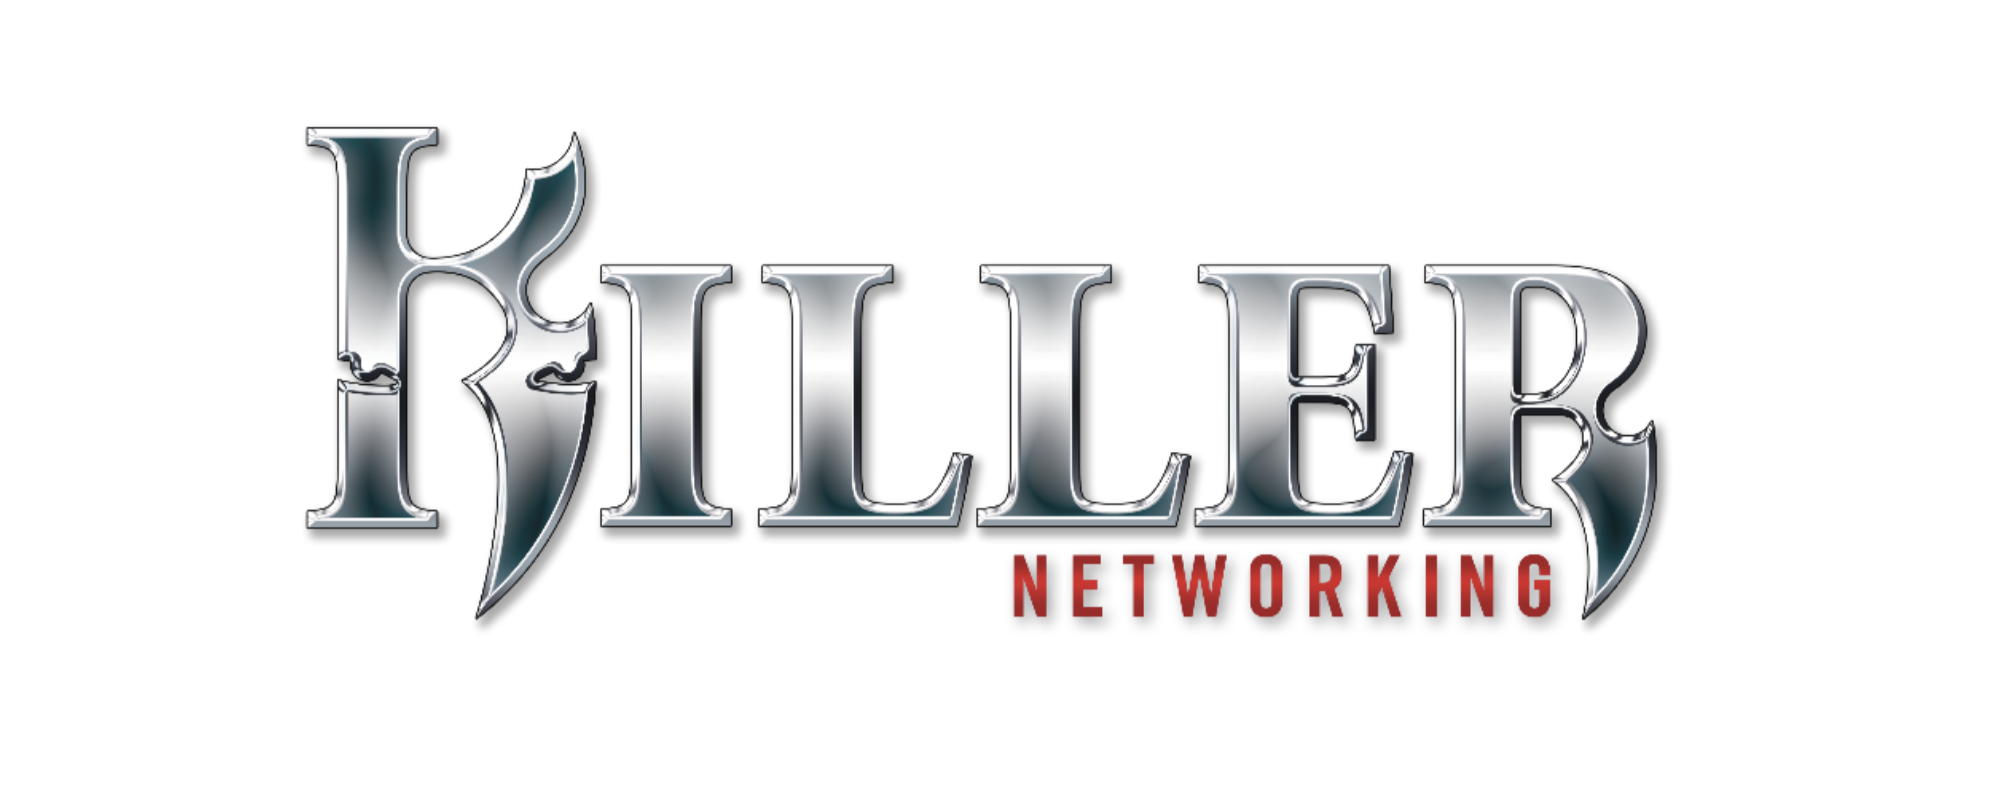 Rivet Networks Announces Killer E2600 Network Controller